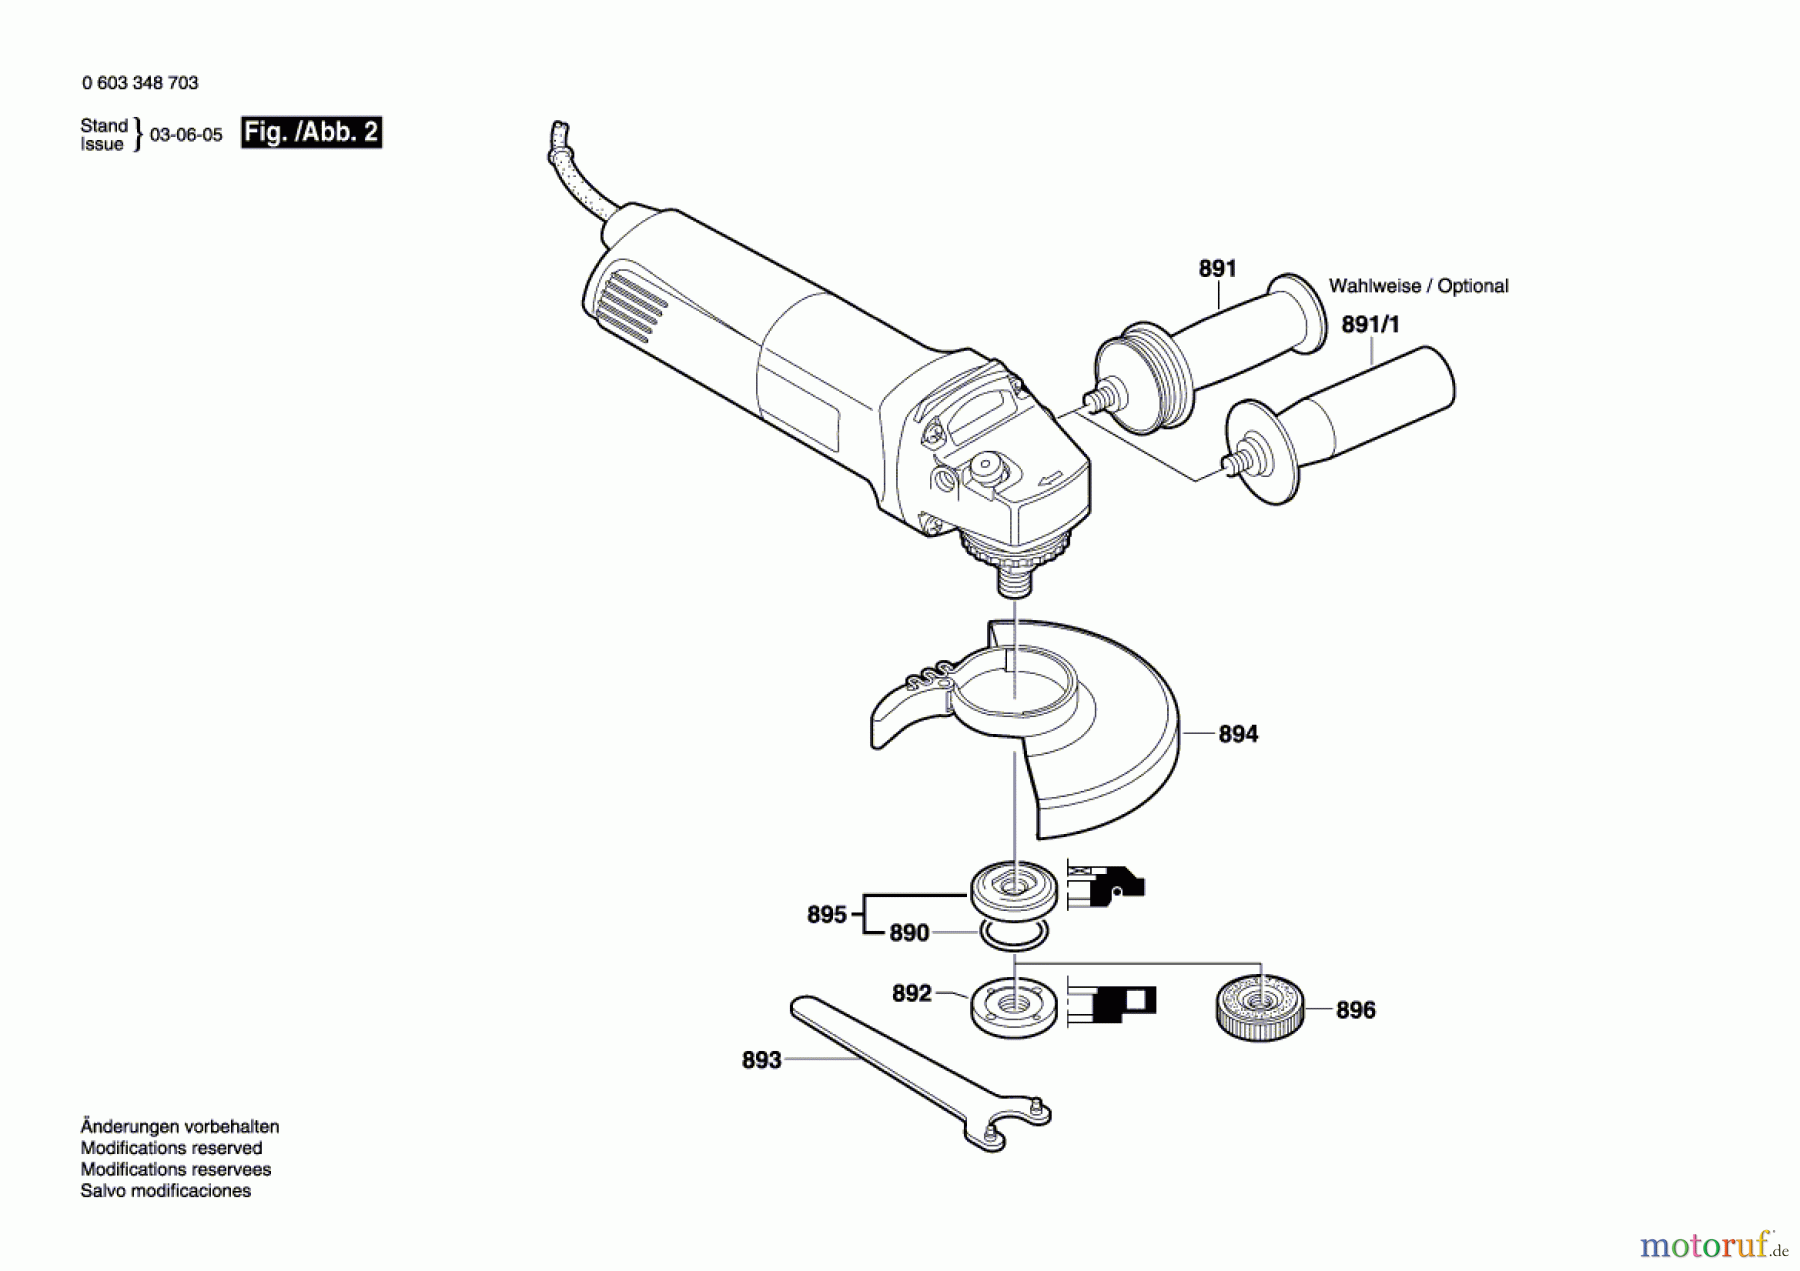  Bosch Werkzeug Winkelschleifer PWS 13-125 CE Seite 2